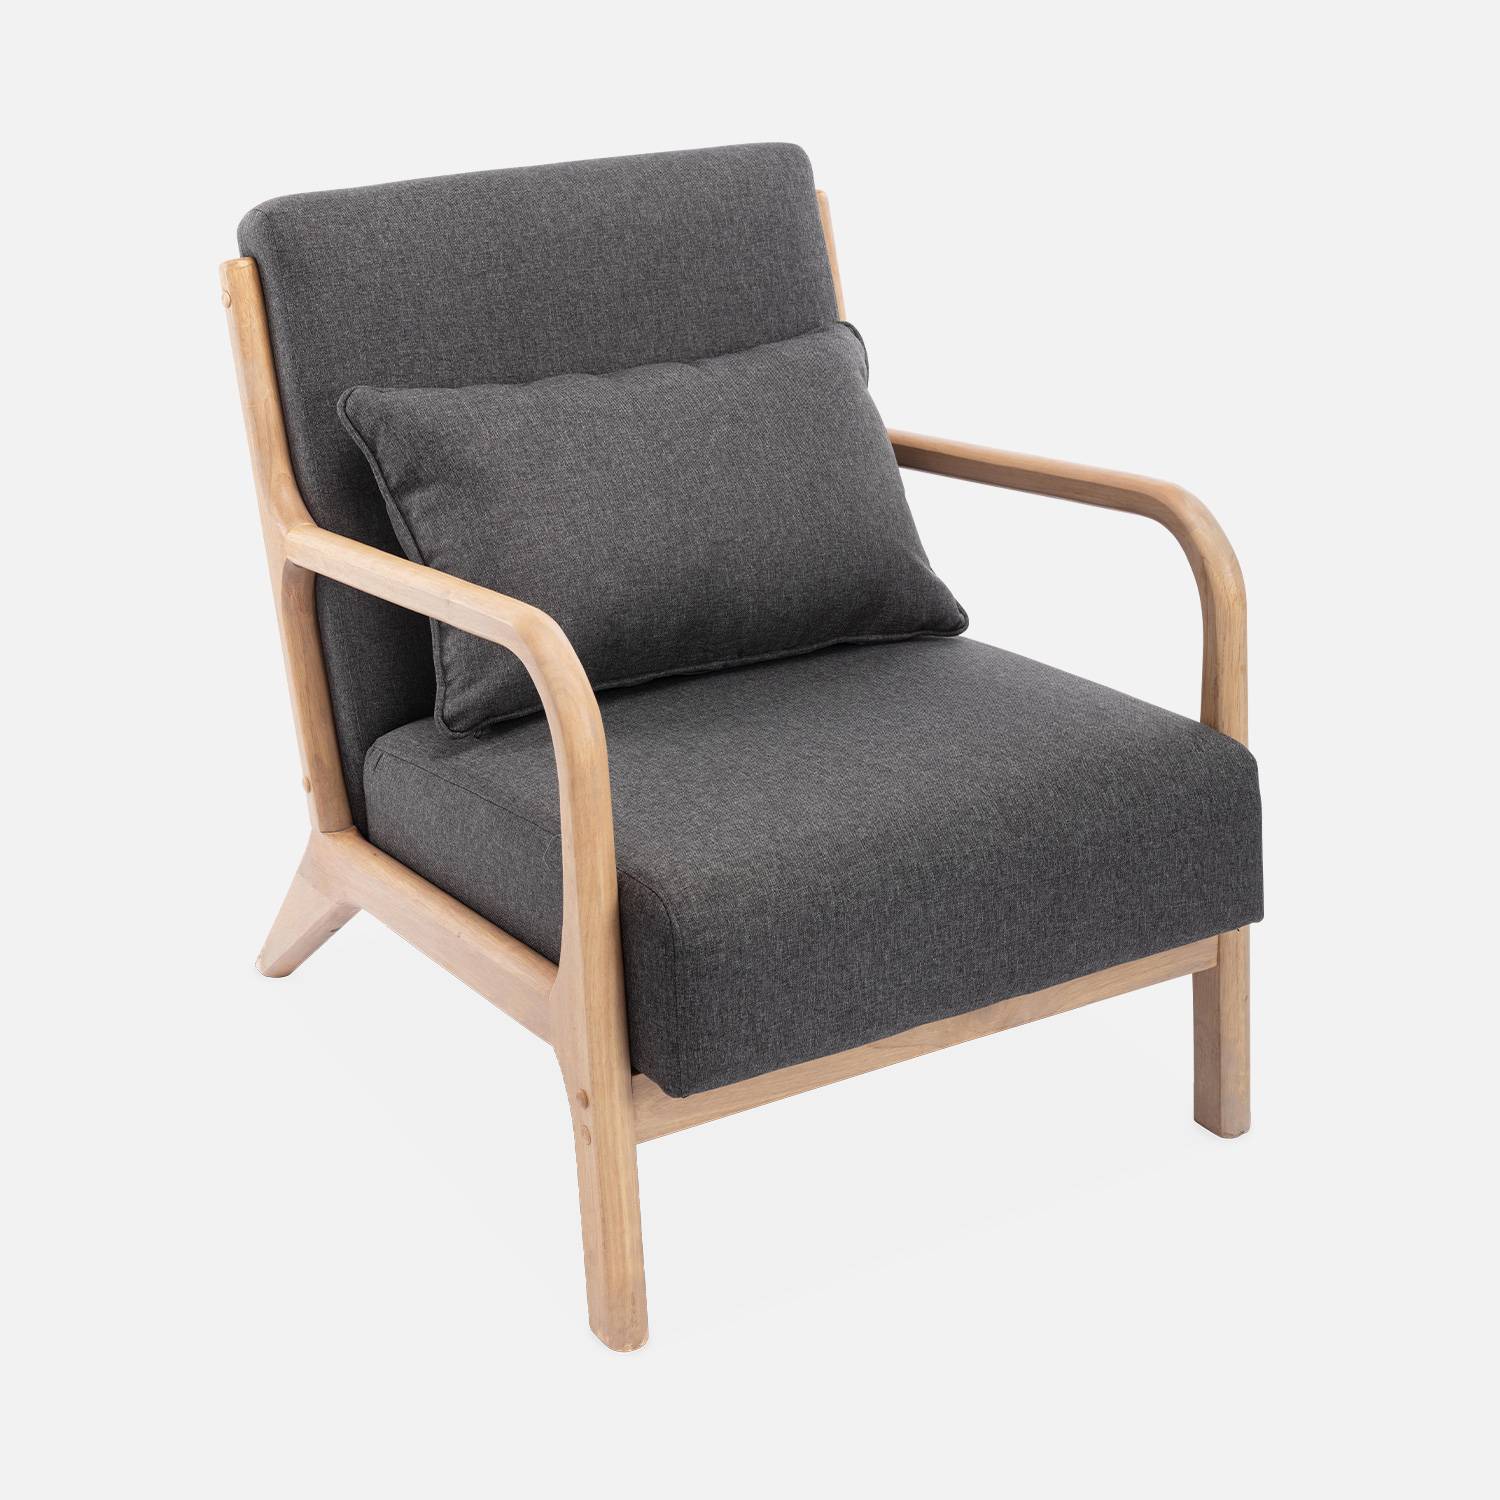 Fauteuil design en bois et tissu, 1 place droit fixe, pieds compas scandinave, structure en bois solide, assise confortable, gris foncé Photo3